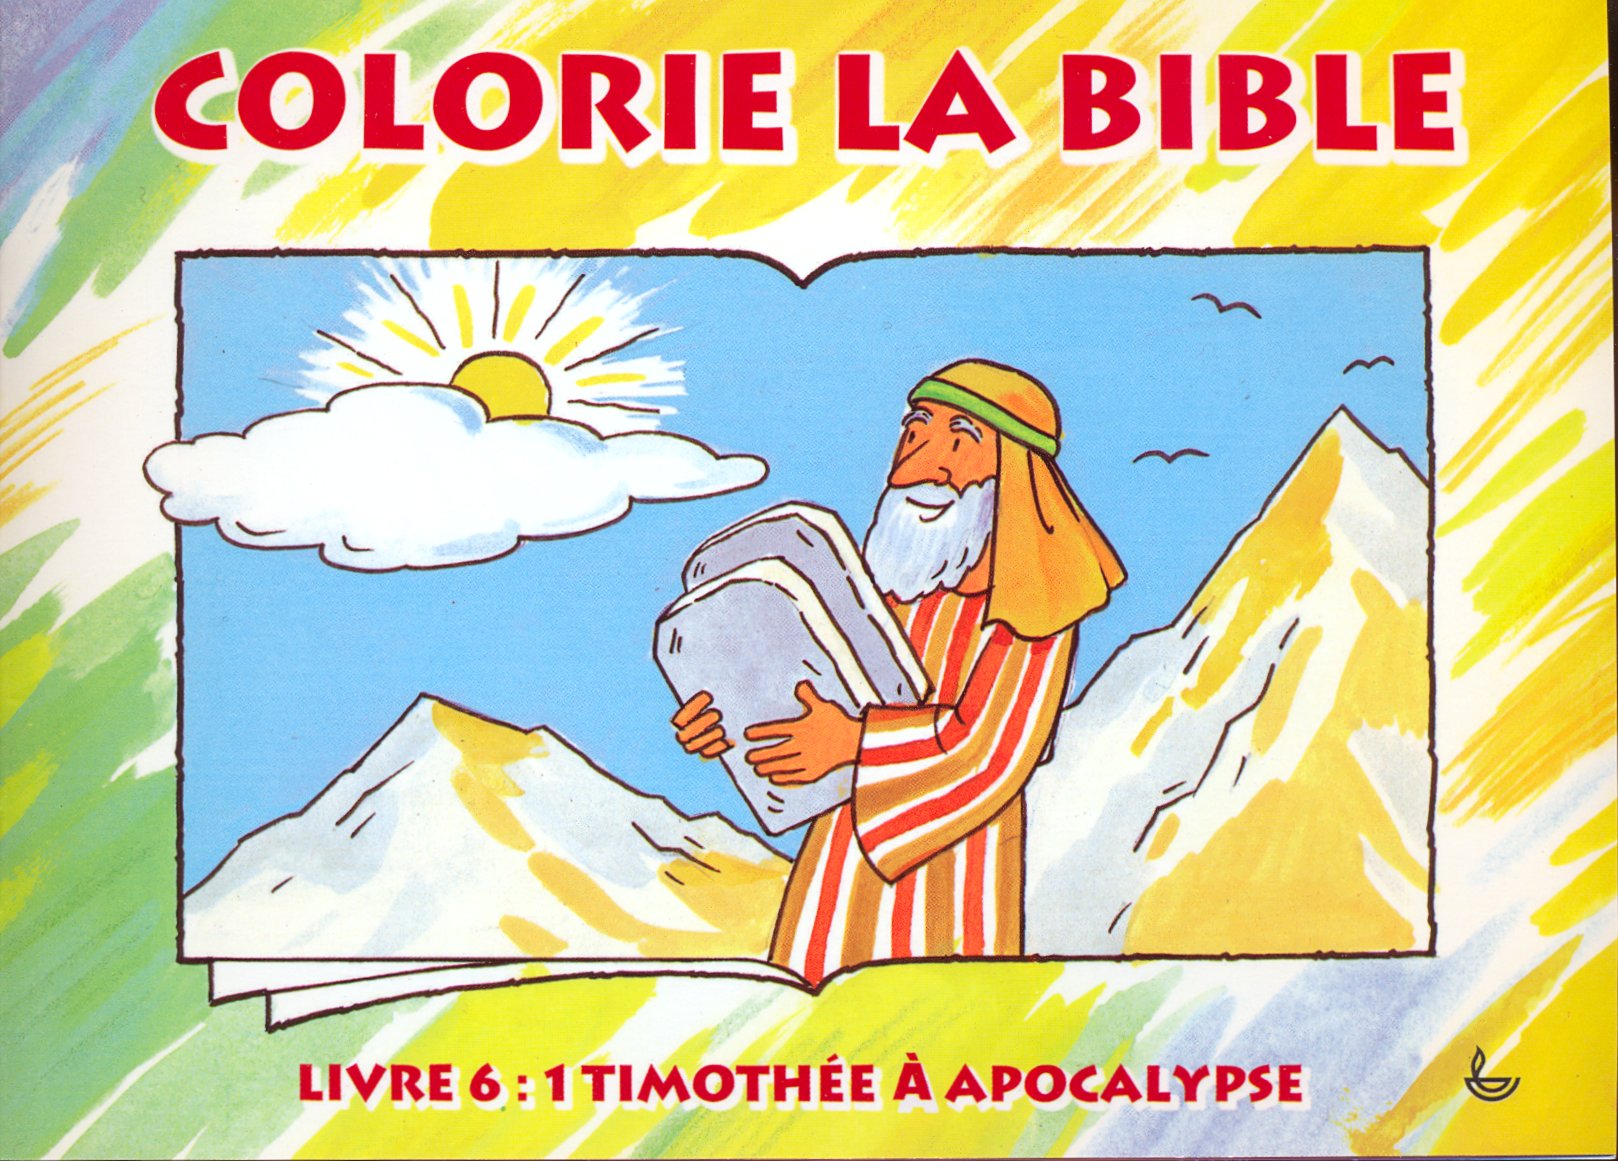 1 Timothée à Apocalypse - Colorie la Bible, livre 6